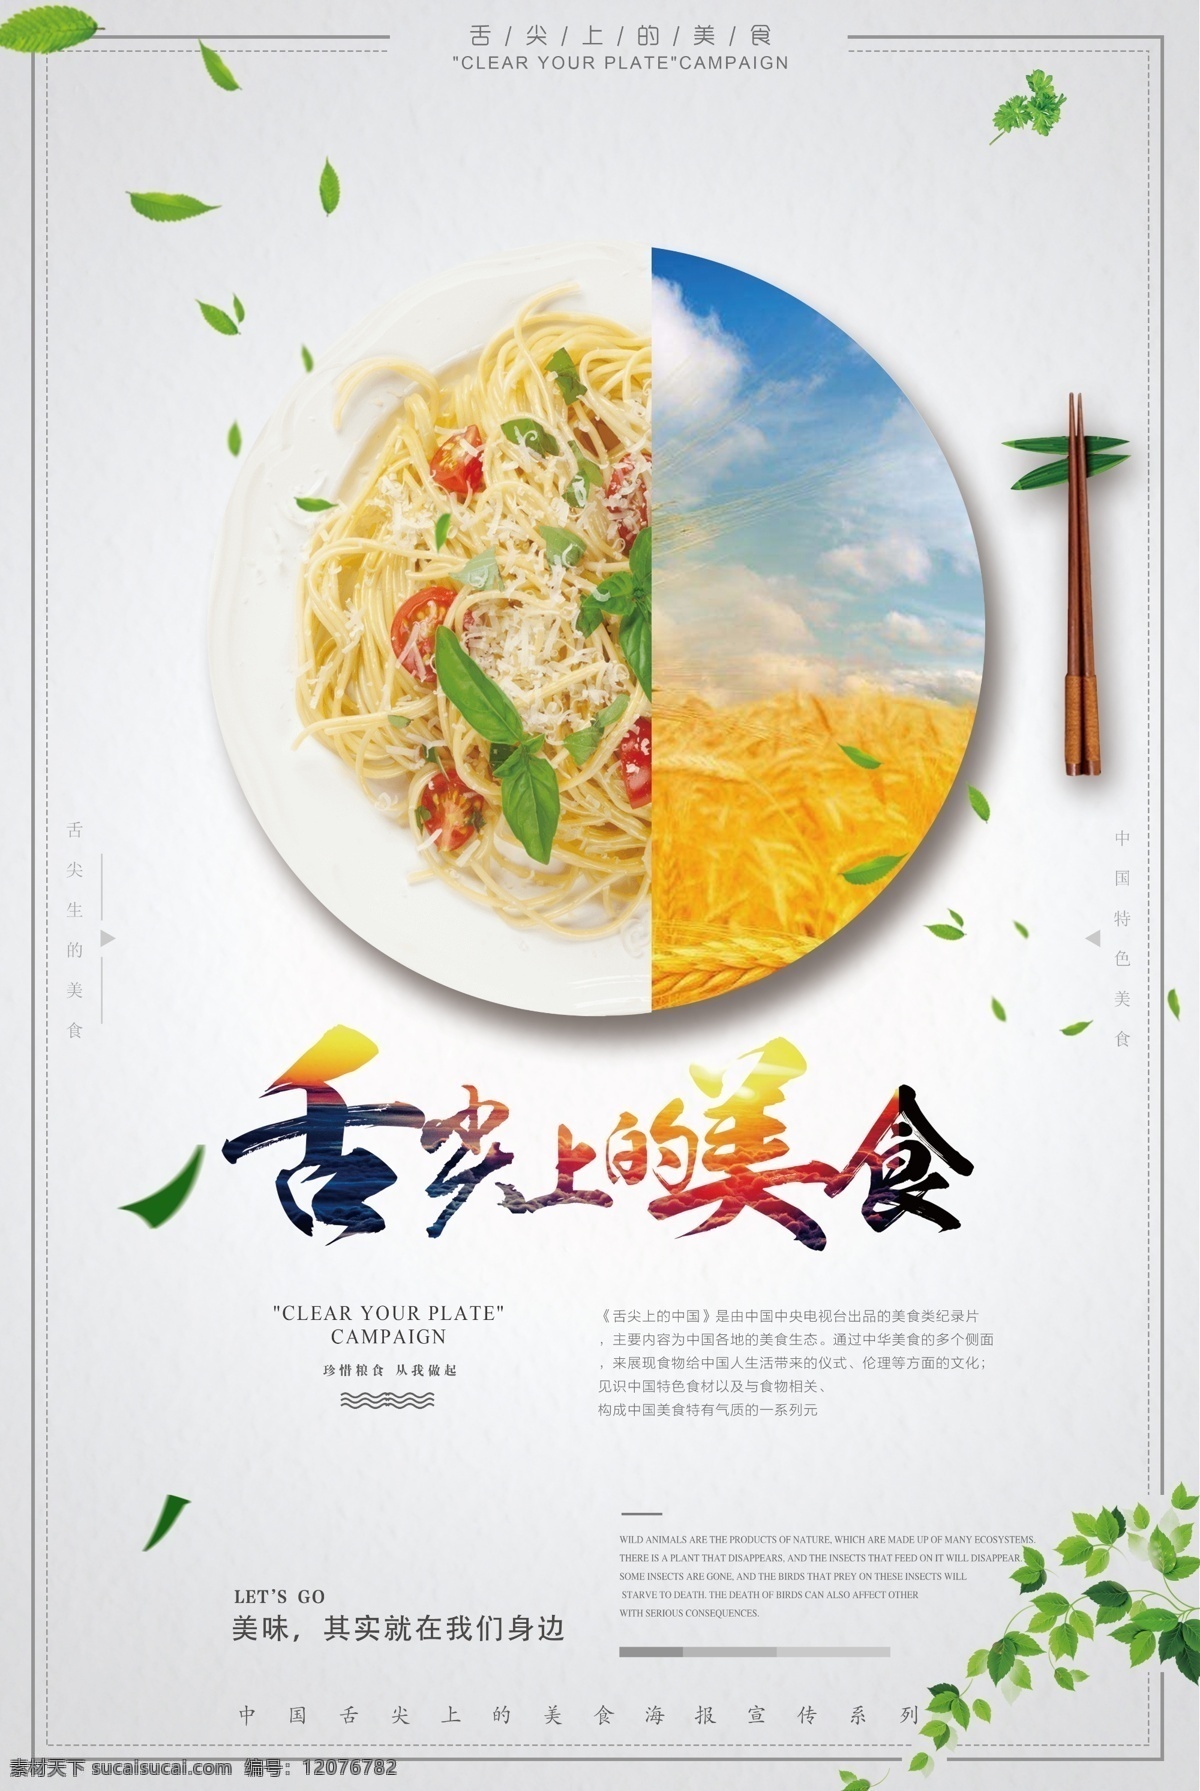 2017 年 青色 清新 美食 面条 拉面 宣传海报 舌尖上的美食 筷子 中国美食 干拌面